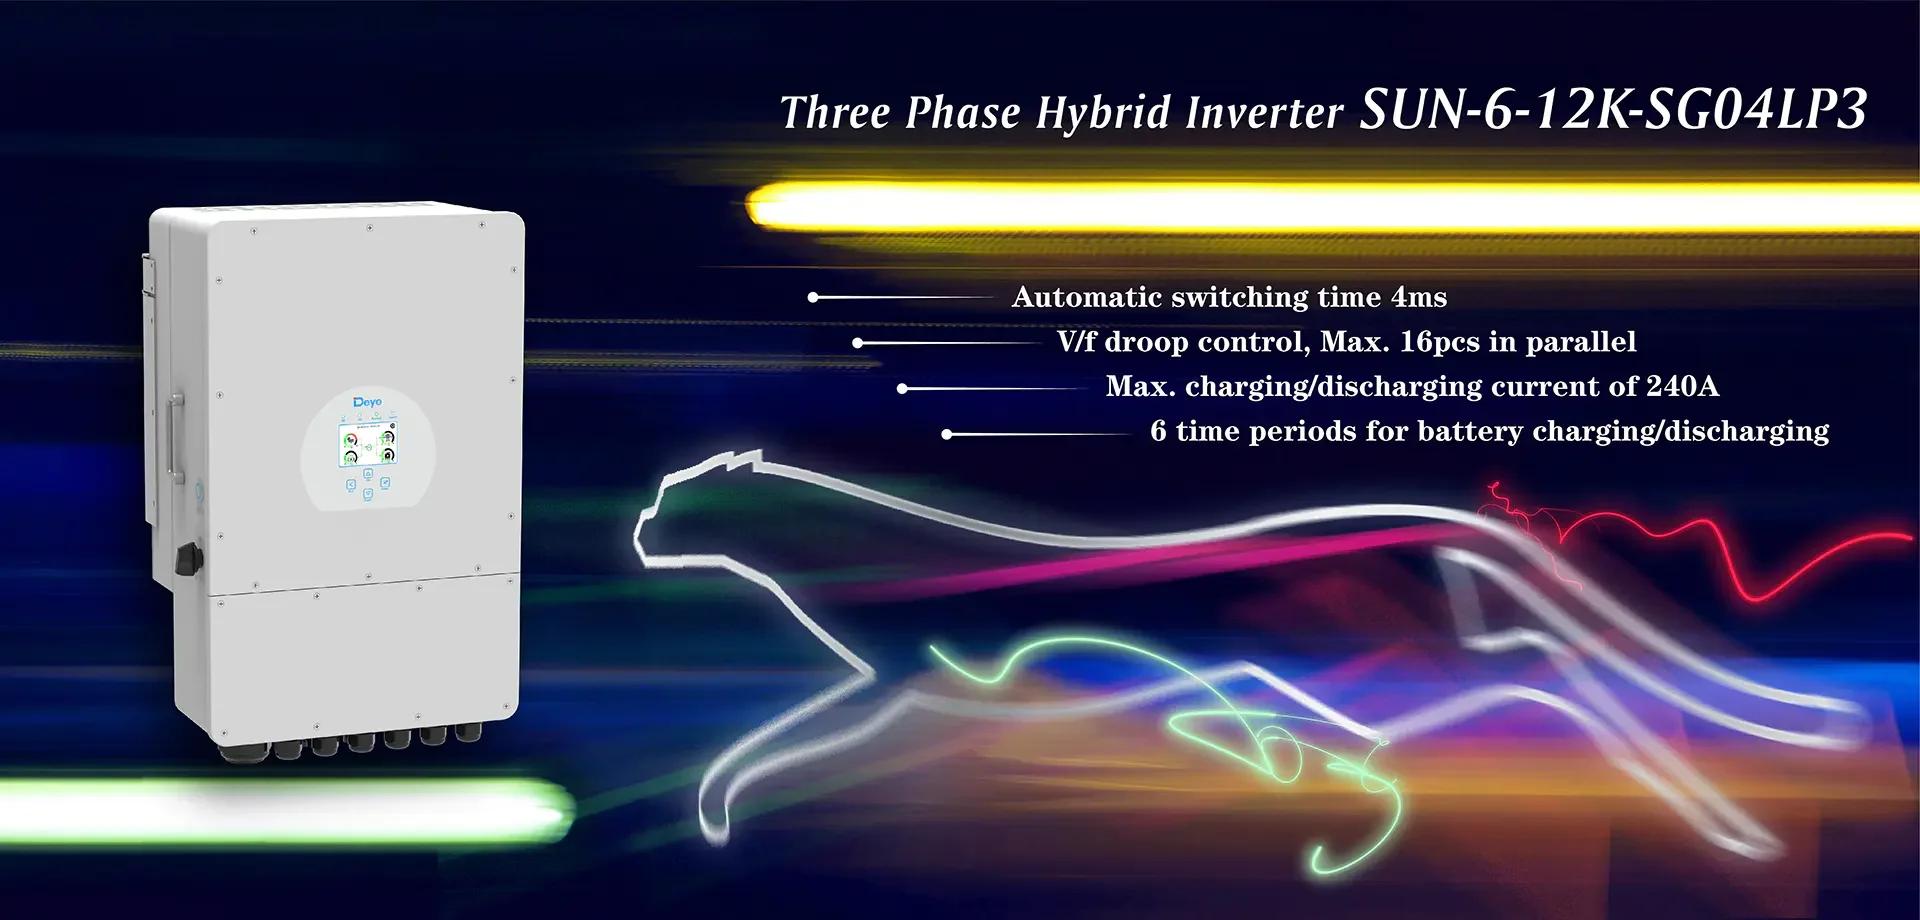 deye sun-8k-sg04lp3 8kw 10kw 12kw dreiphasig hybrid inverter 3 phase für  hybrides system